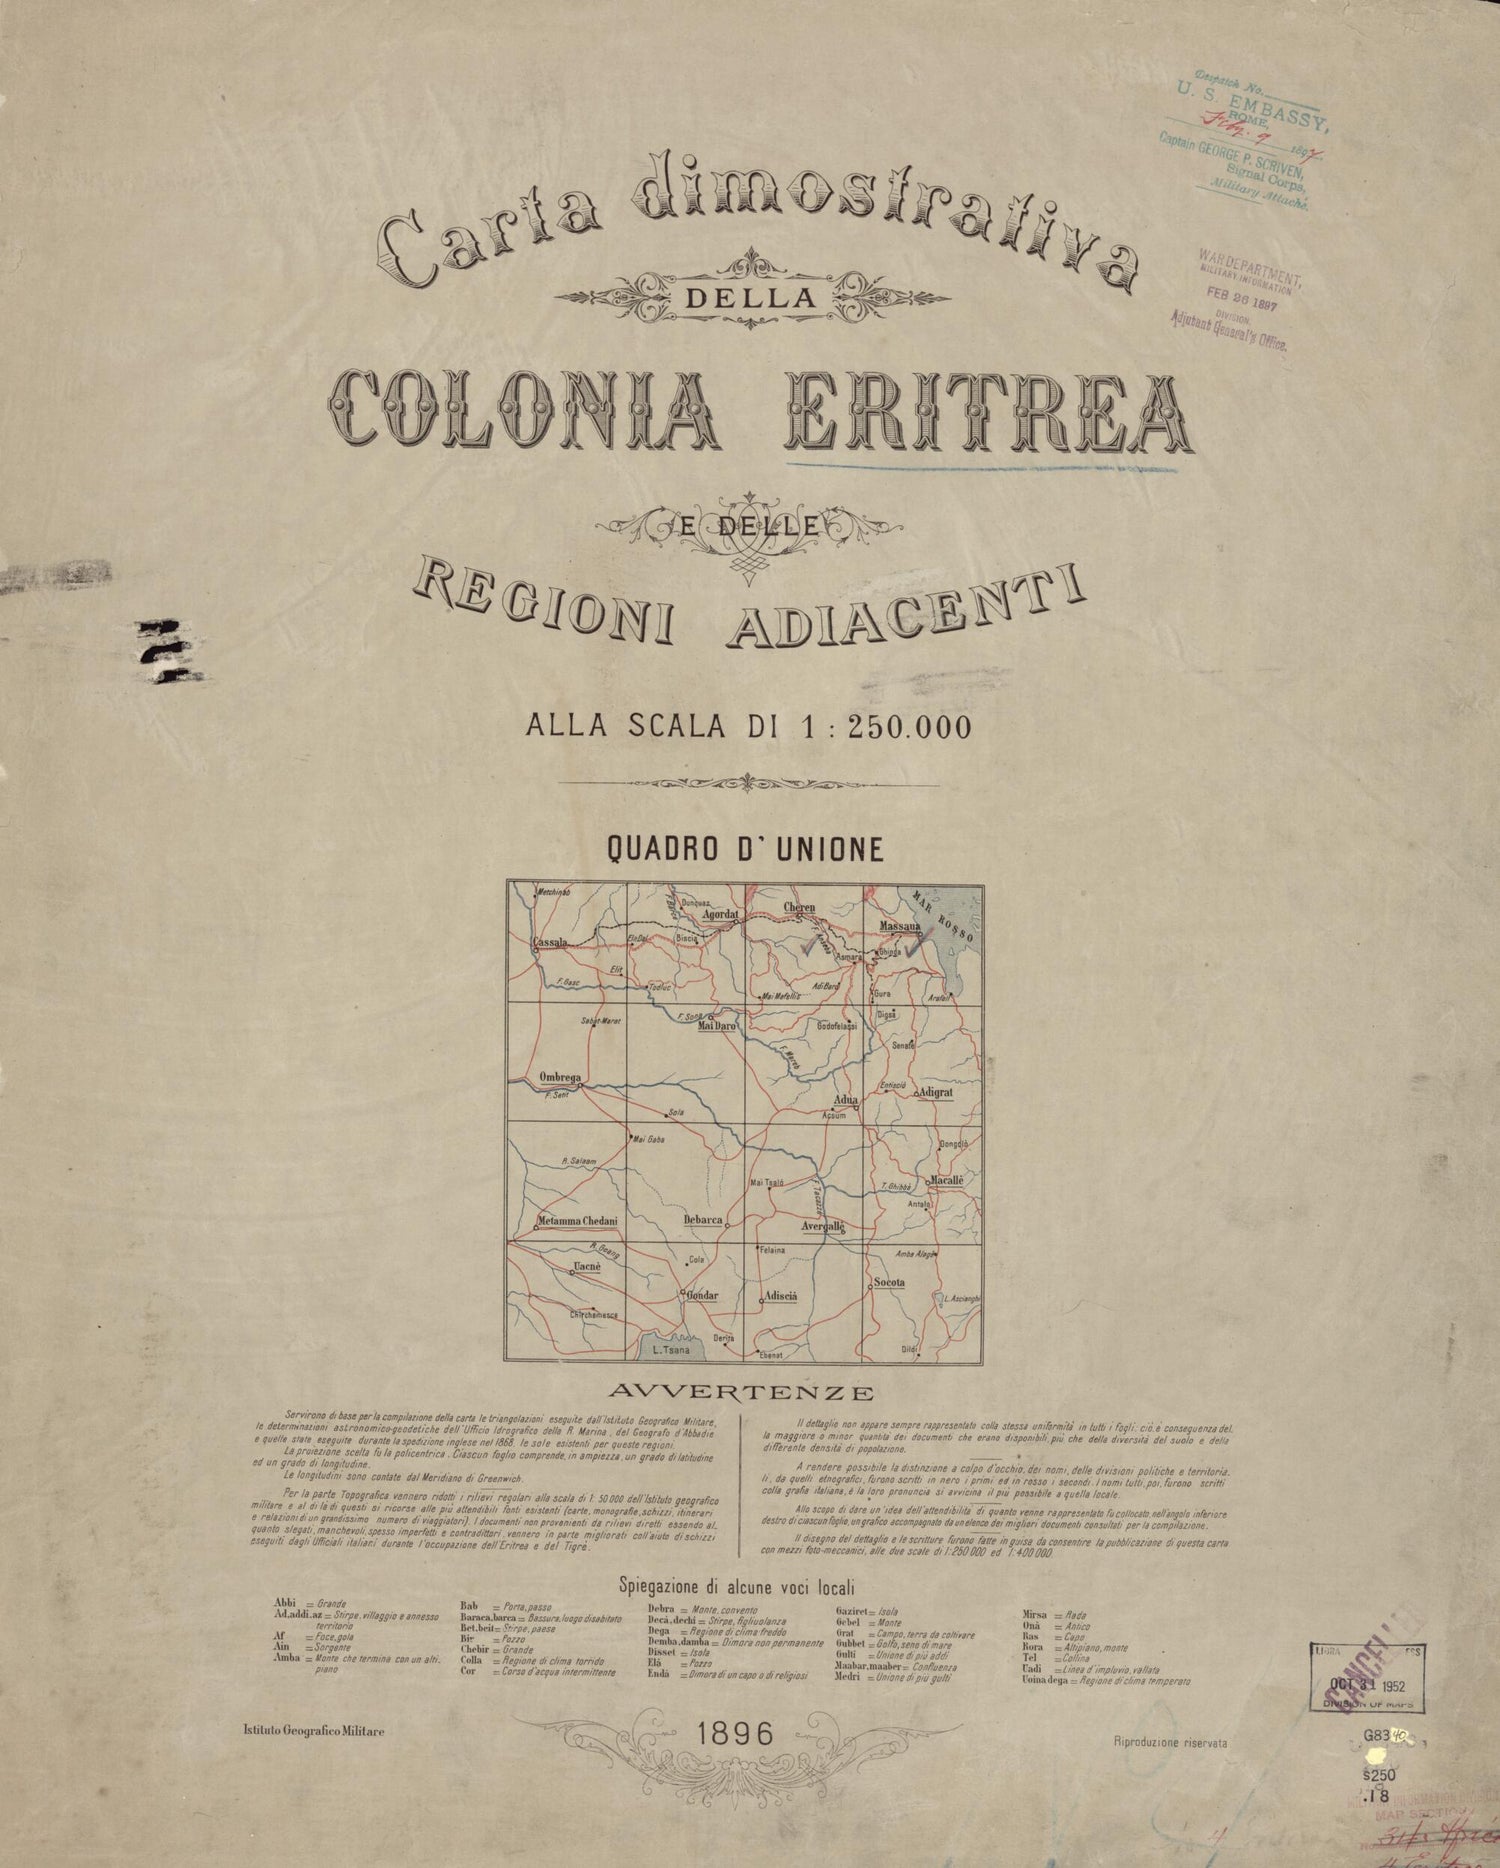 This old map of Carta Dimostrativa Della Colonia Eritrea E Delle Regioni Adiacenti Alla Scala Di 1:250,000 from 1896 was created by  Istituto Geografico Militare (Italy) in 1896